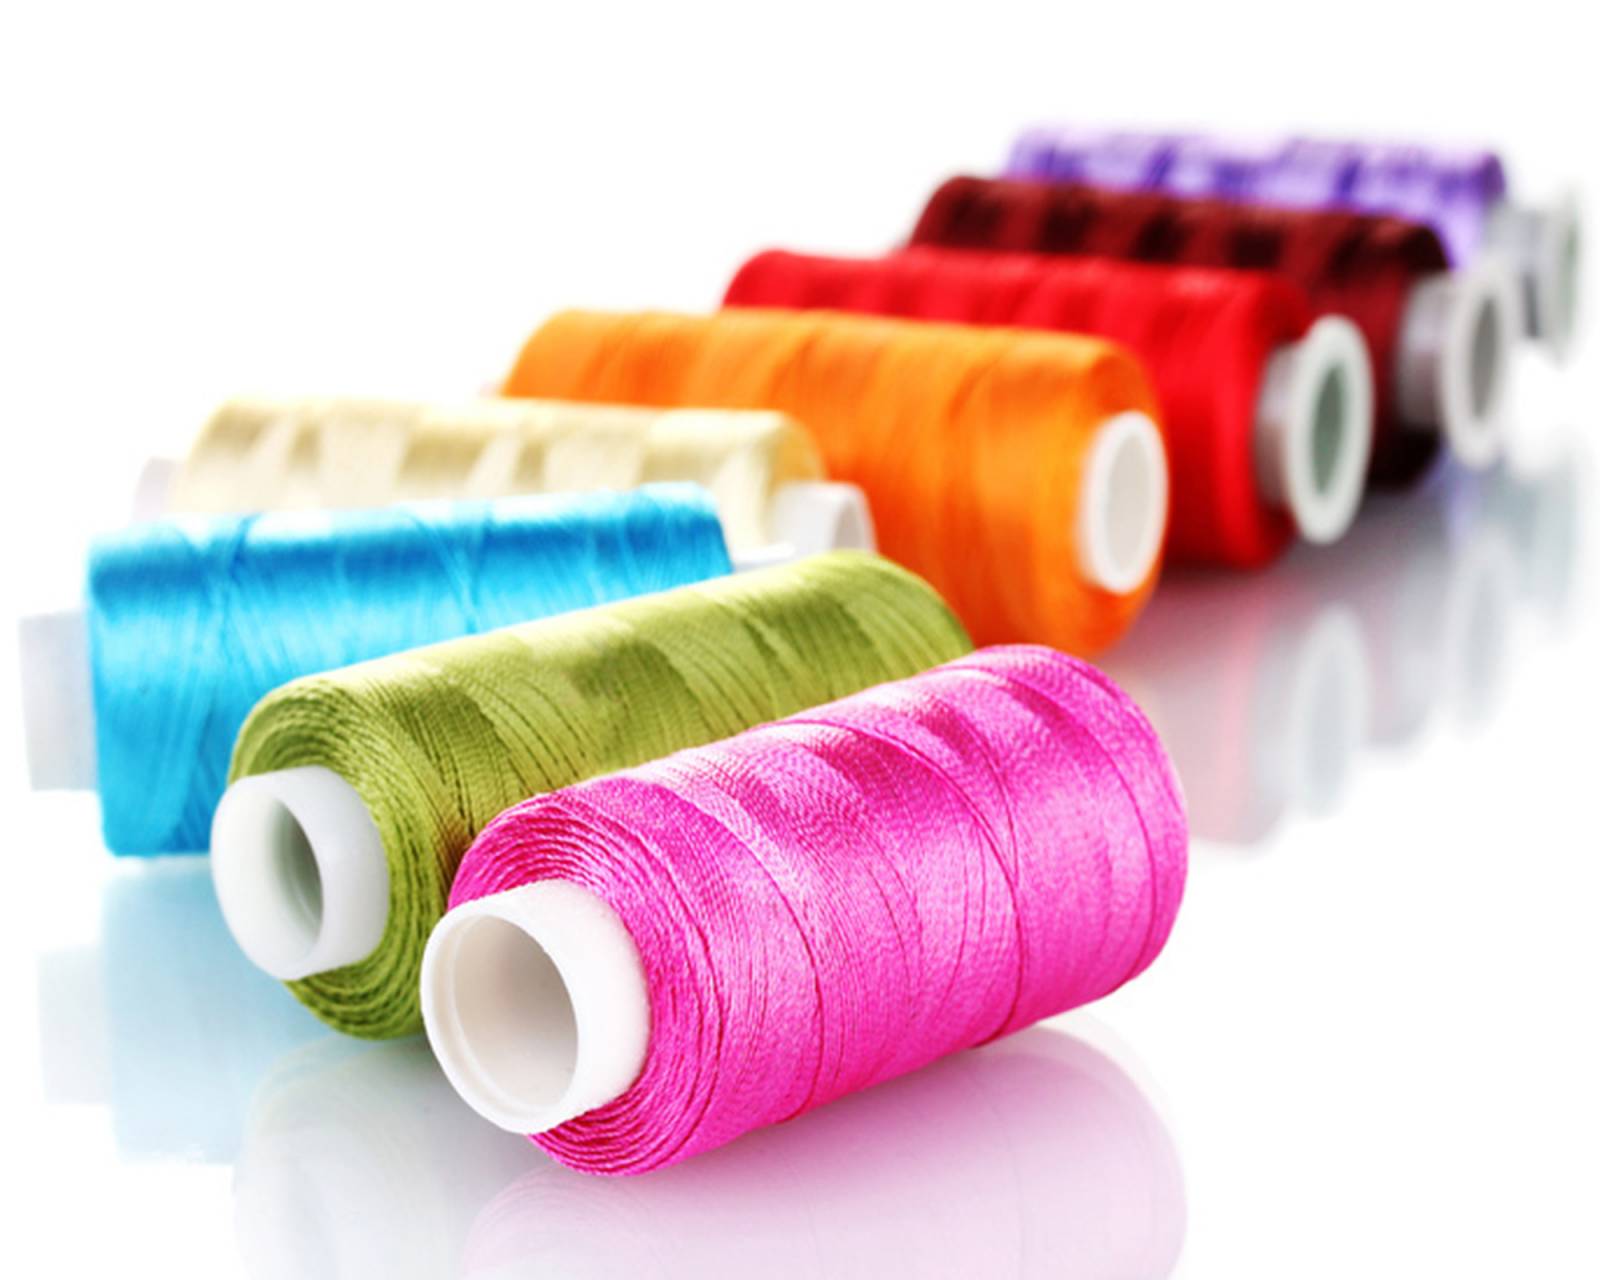 La Broderie - Communication sur textile - broderie personnalisée sur  textile